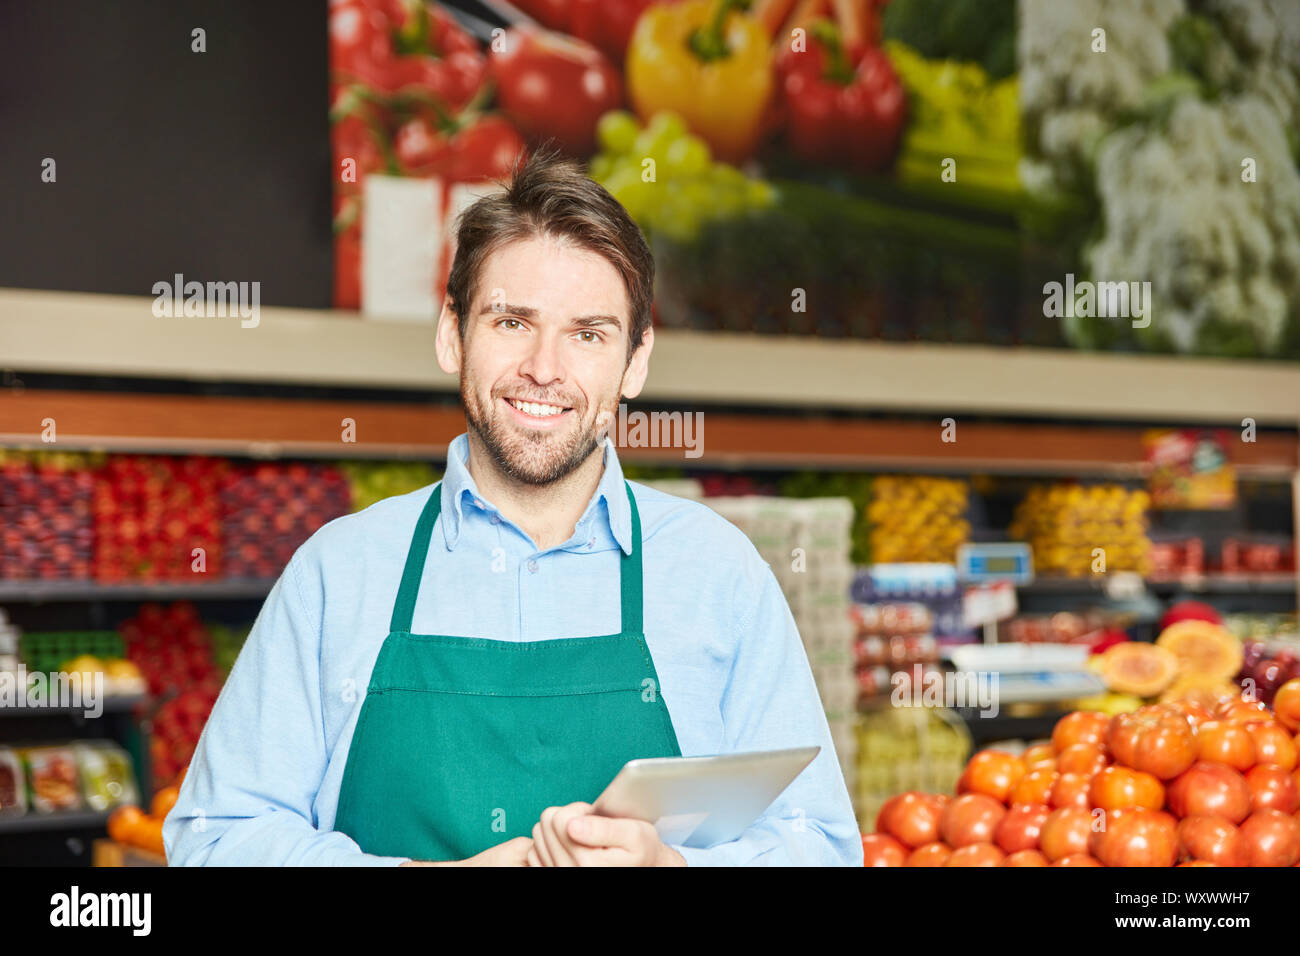 Lächelnde Menschen als Verkäufer oder Marktführer mit Schürze im Supermarkt Stockfoto